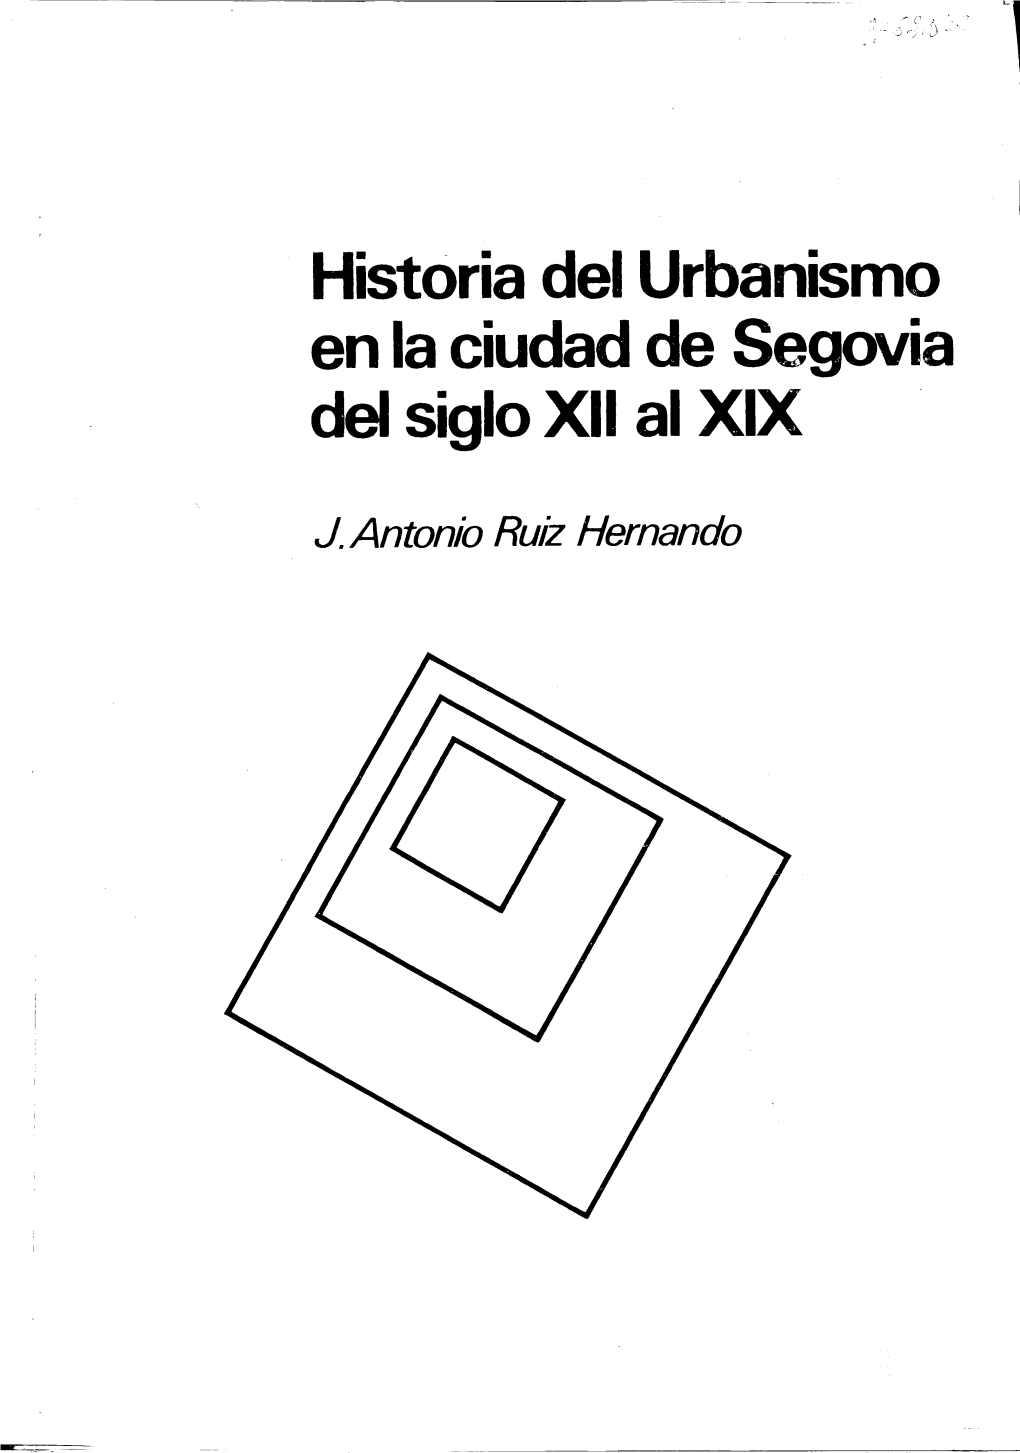 Historia Del Urbanismo En La Ciudad De Segovia Del Siglo XII Al XIX